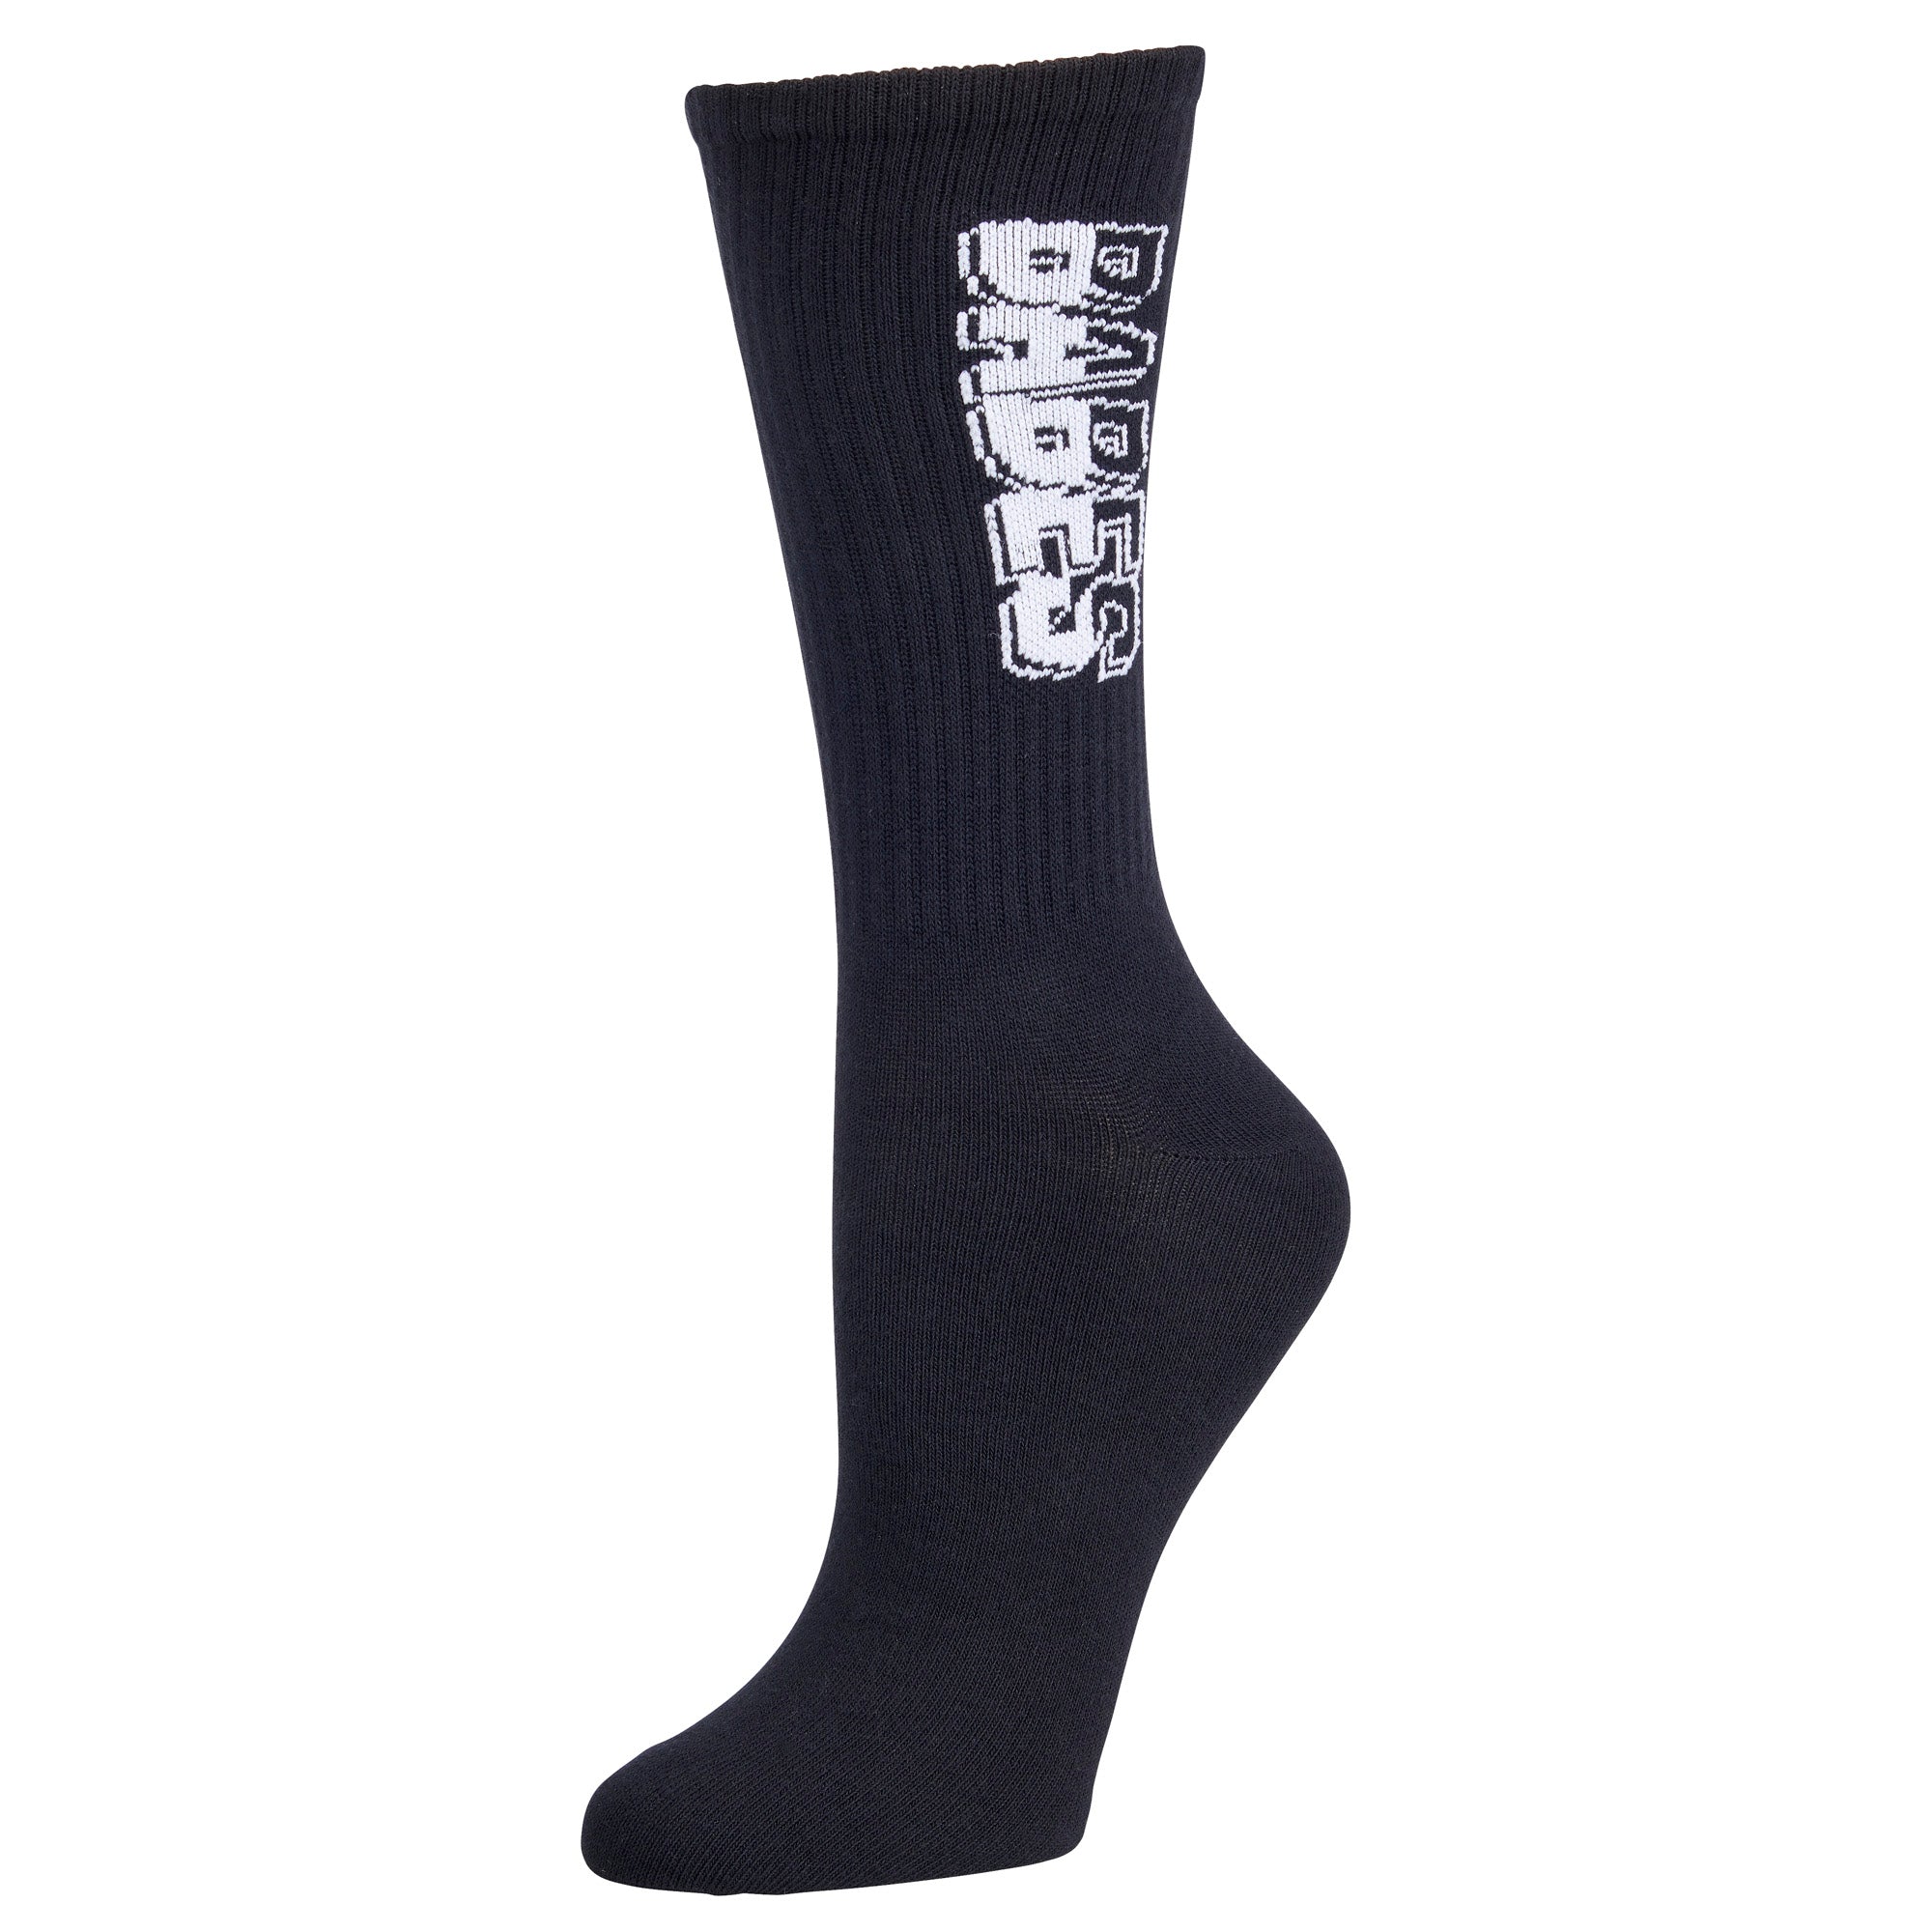 Babes Socks - Black/White